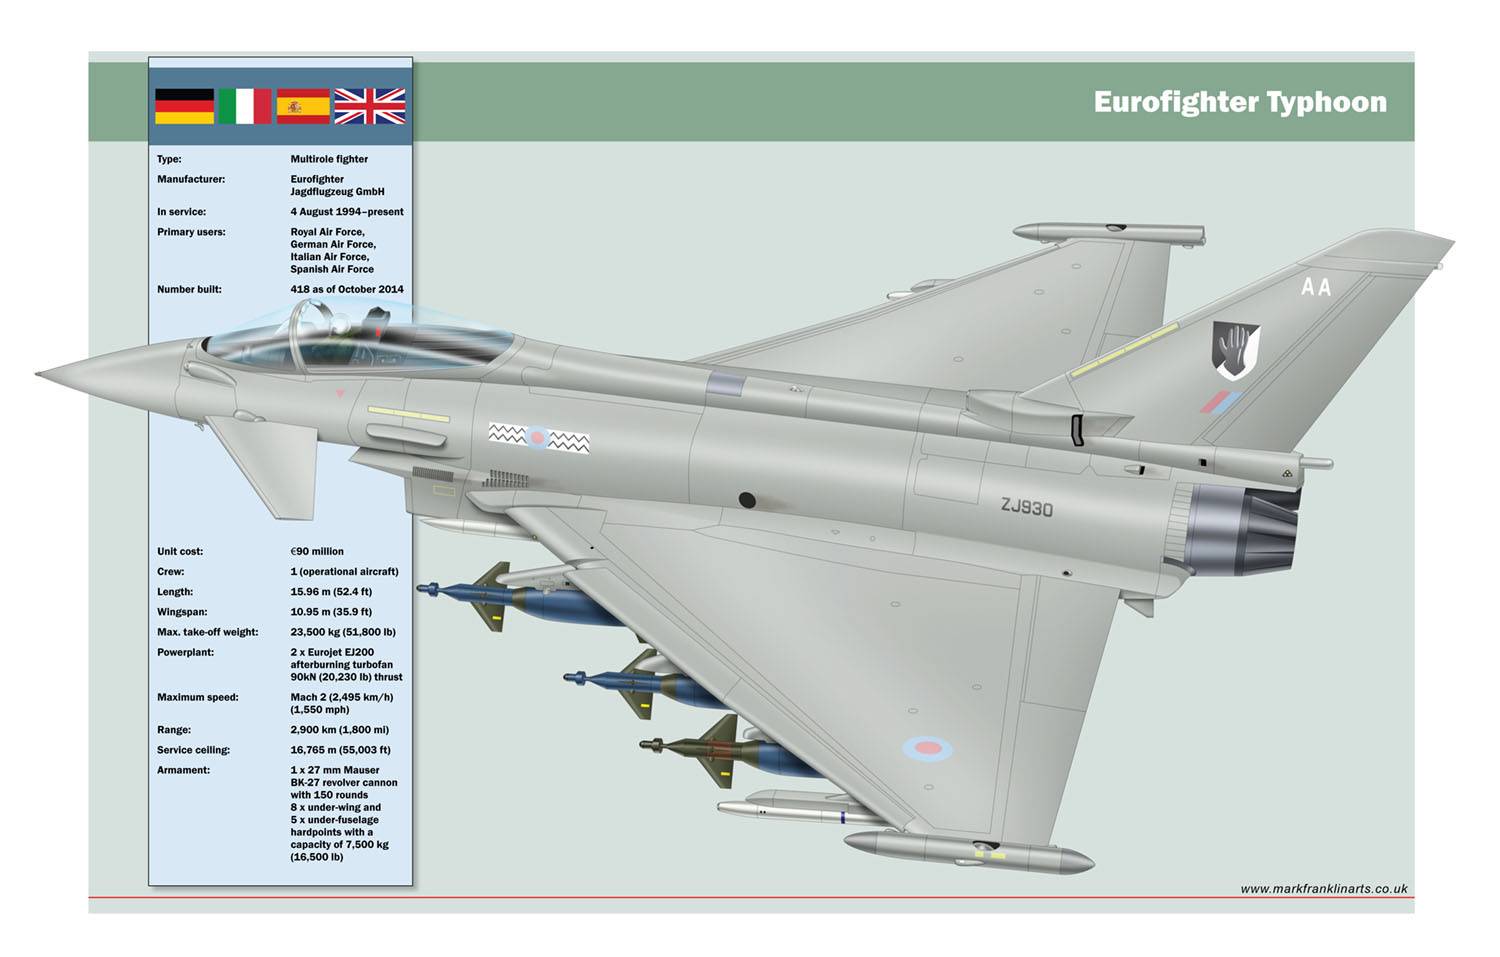 Истребитель eurofighter typhoon ef2000, технические характеристики ттх, бортовые системы в кабине самолета, обзор модификаций и вооружения